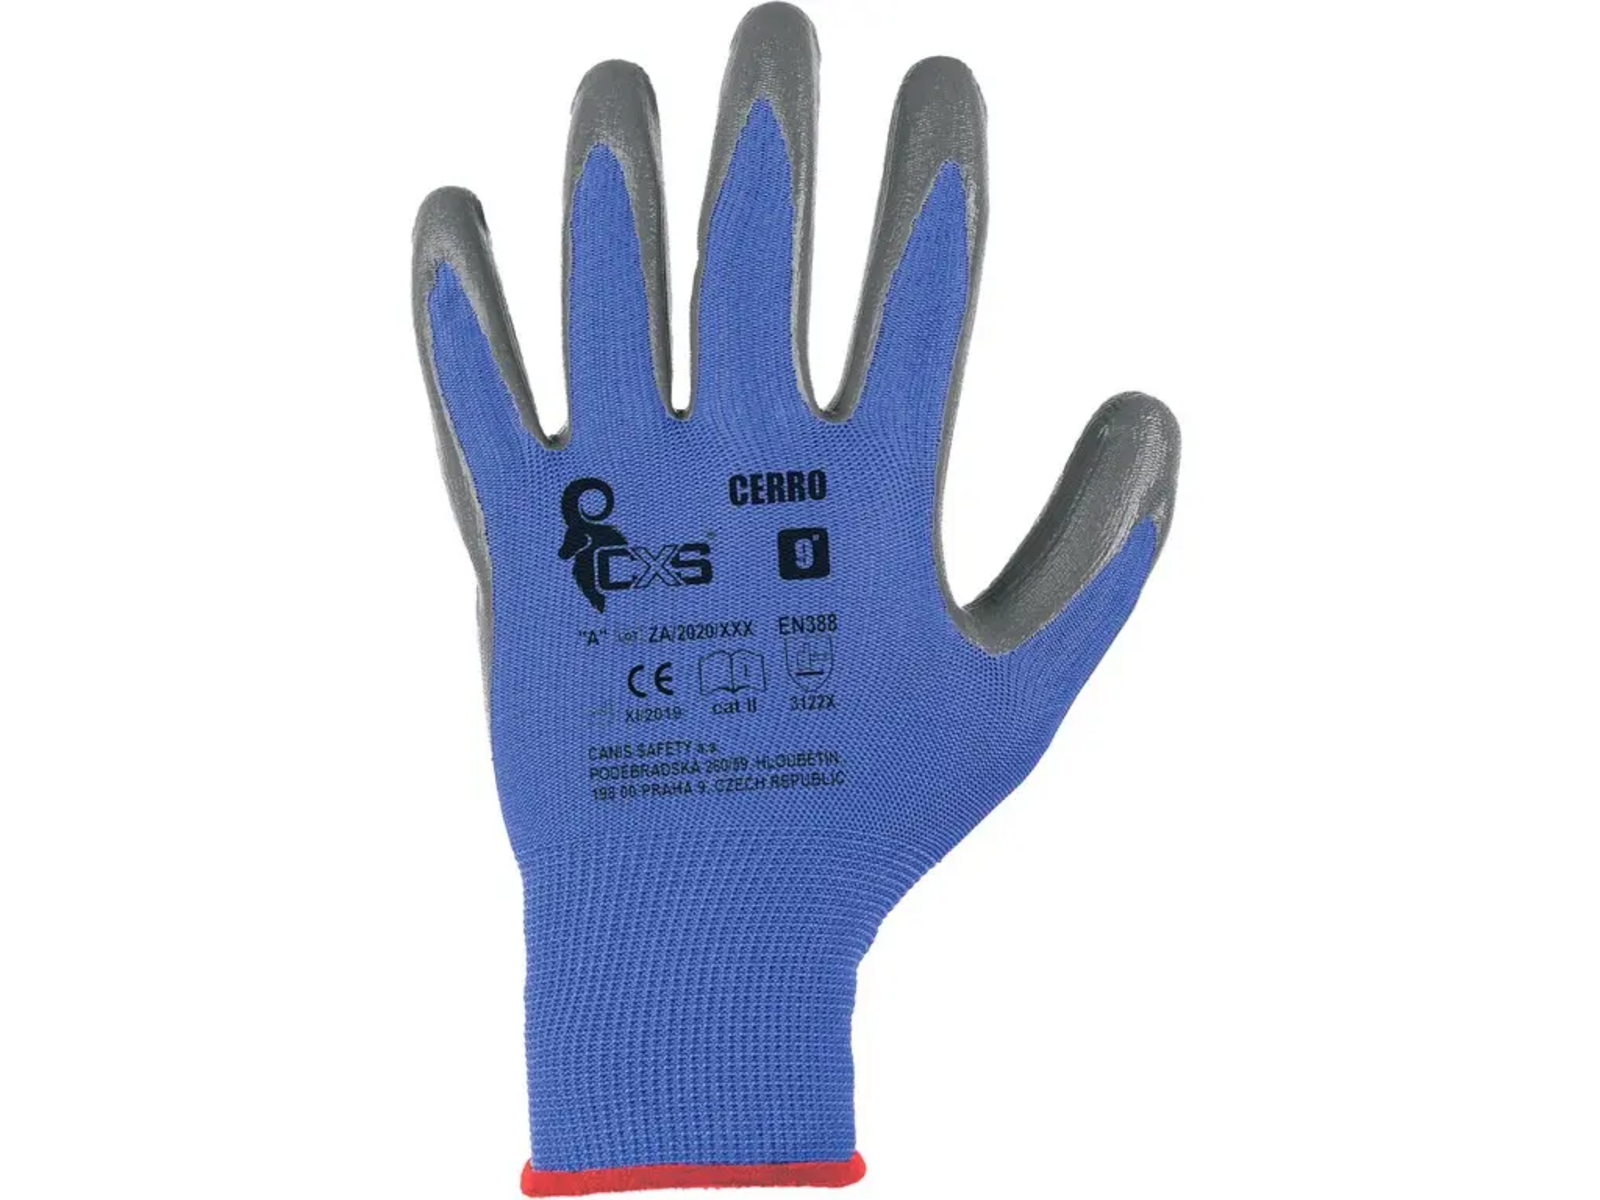 Povrstvené rukavice CXS Cerro - veľkosť: 10/XL, farba: modrá/sivá